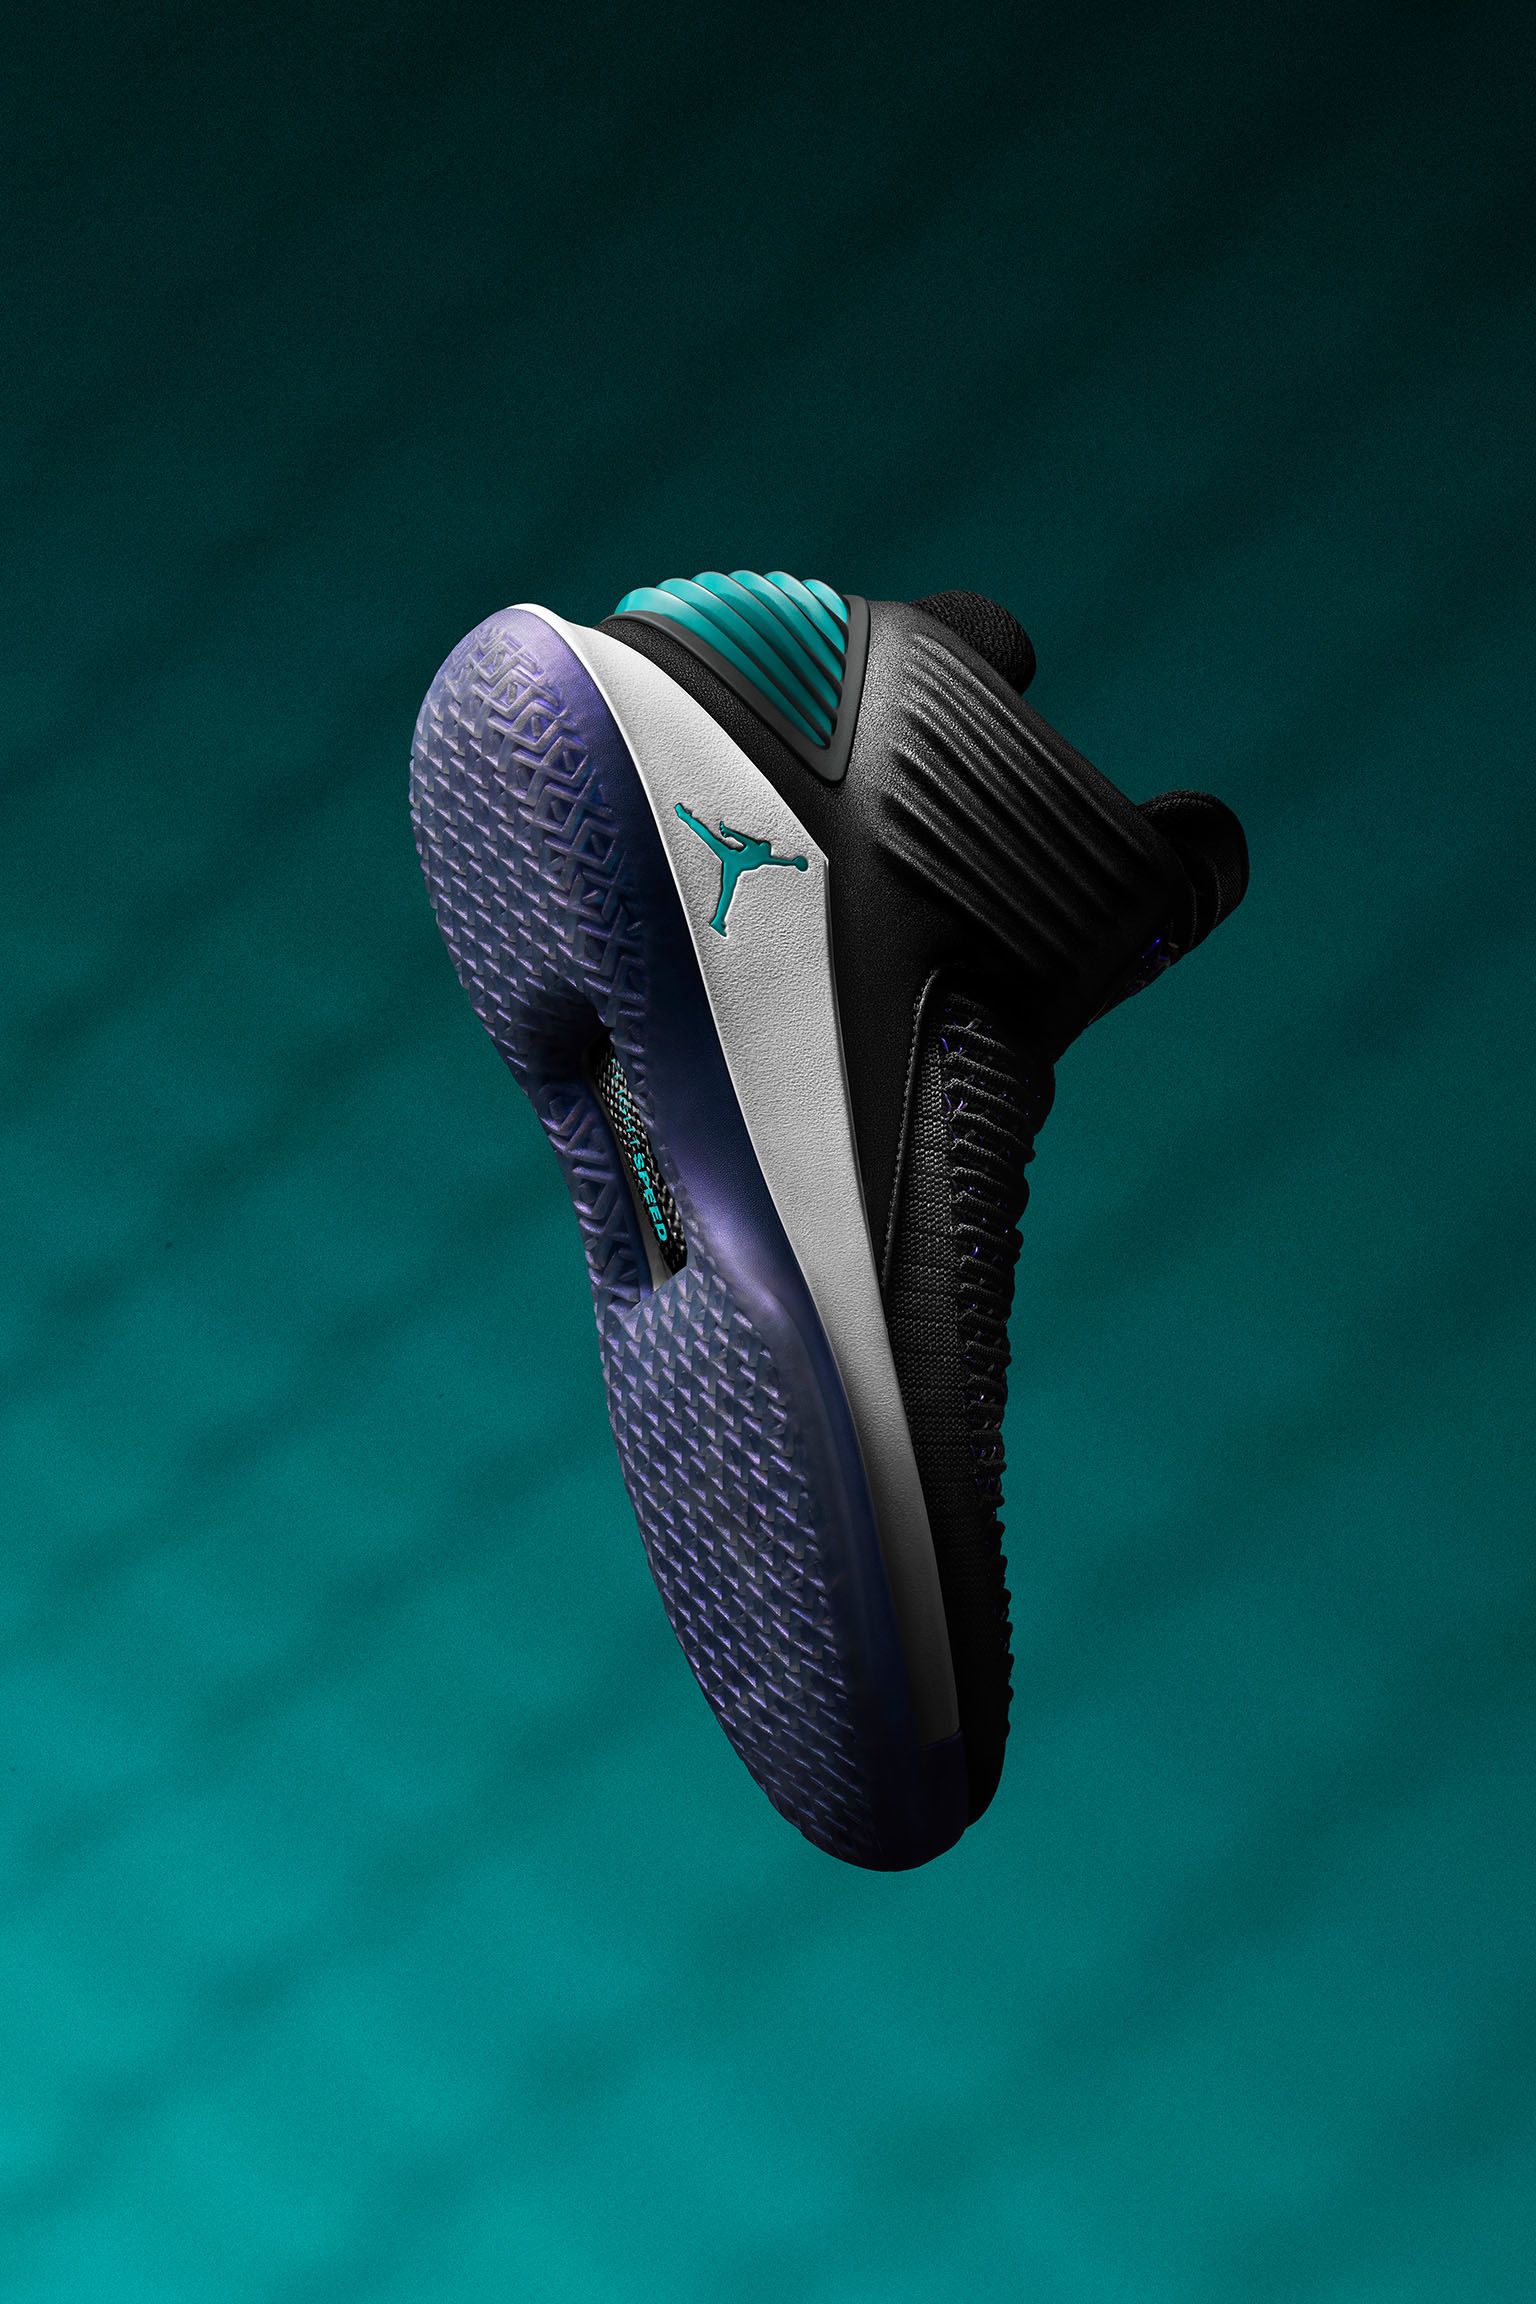 Air Jordan 32 'Boardroom' Release Date. Nike SNKRS